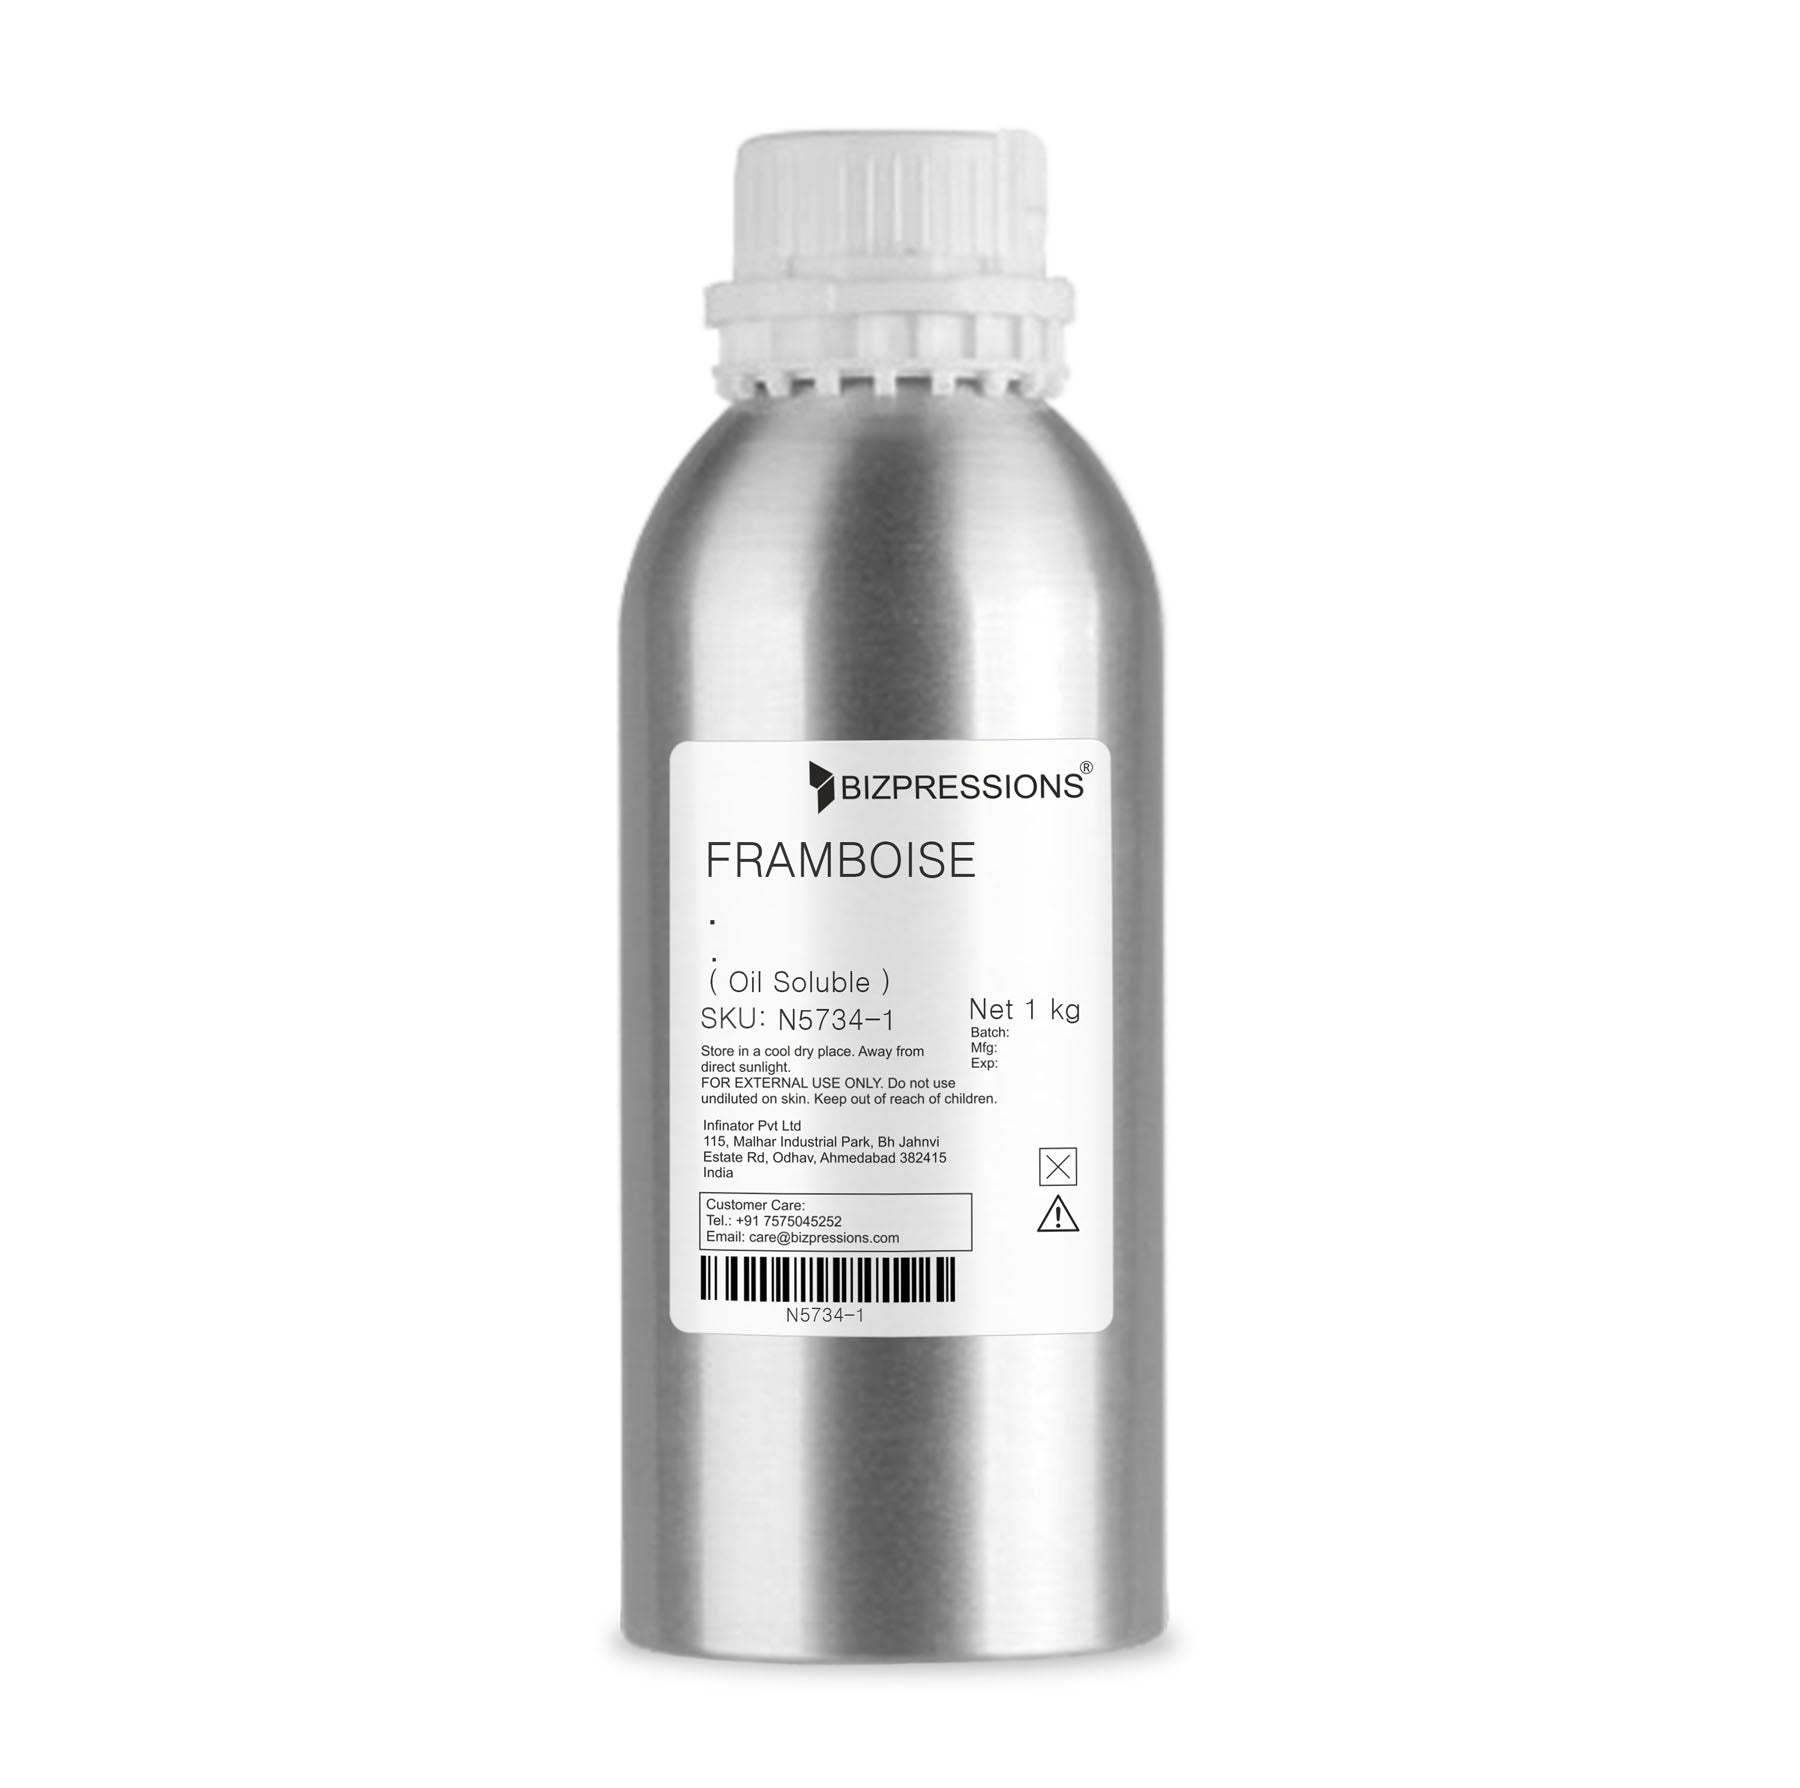 FRAMBOISE - Fragrance ( Oil Soluble ) - 1 kg